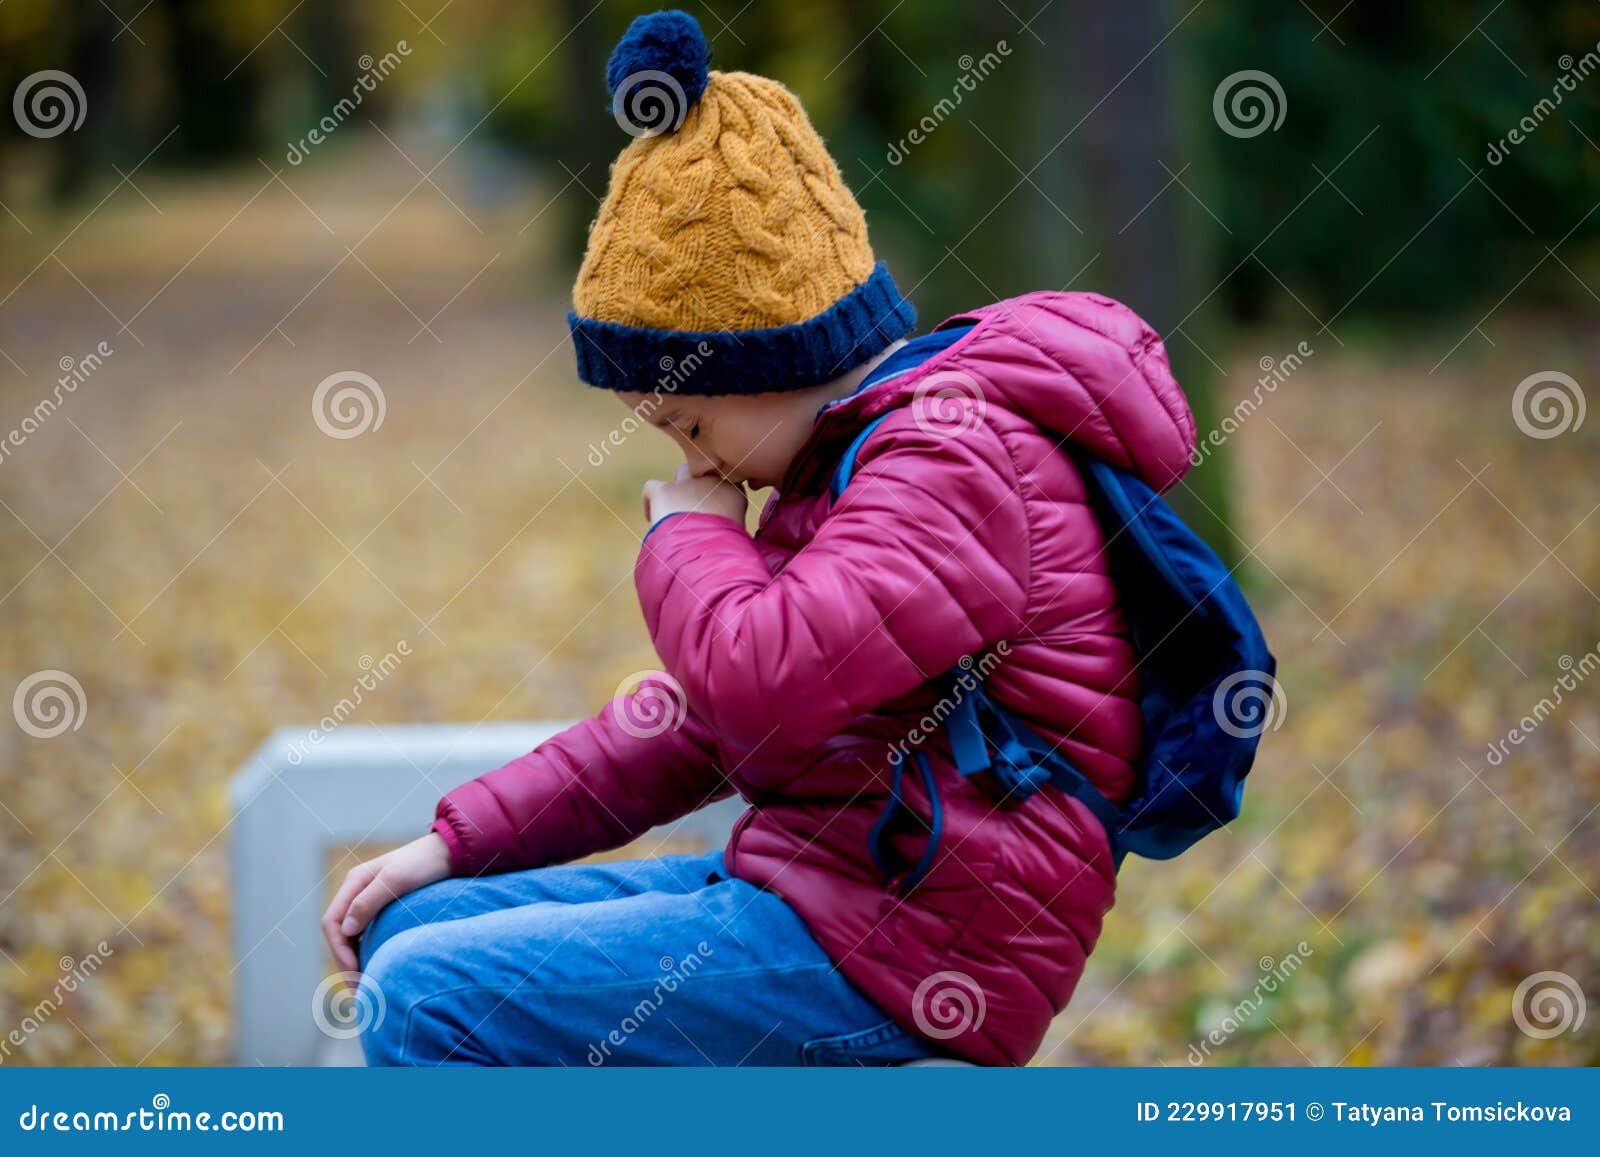 preschool child, boy, sneezing in park, flu season